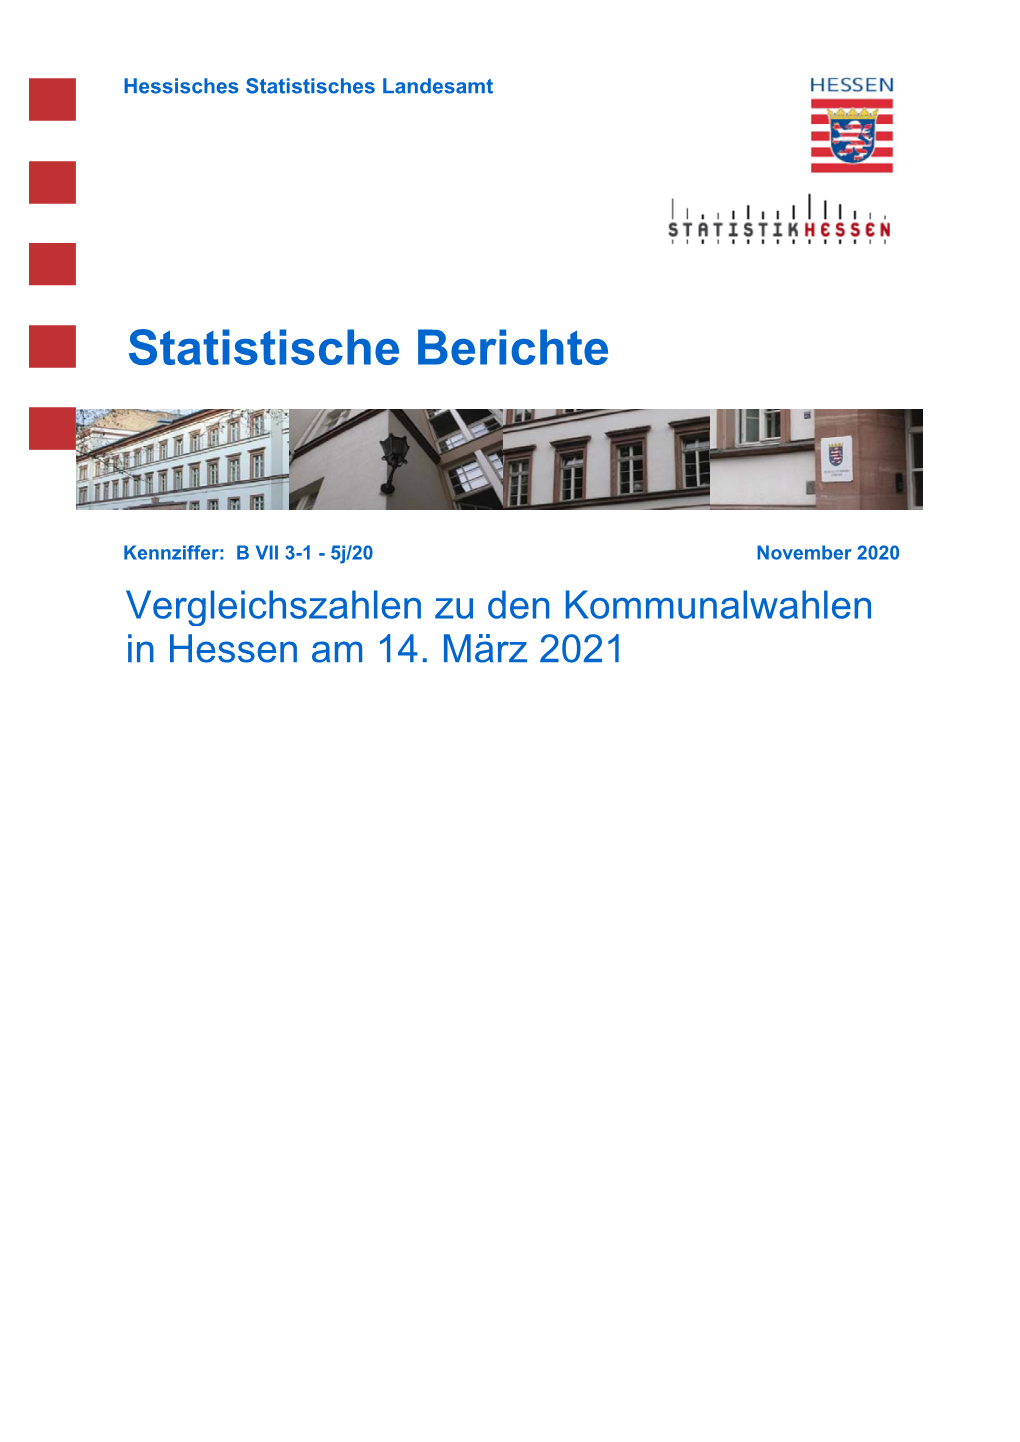 Vergleichszahlen Zu Den Kommunalwahlen in Hessen 2021